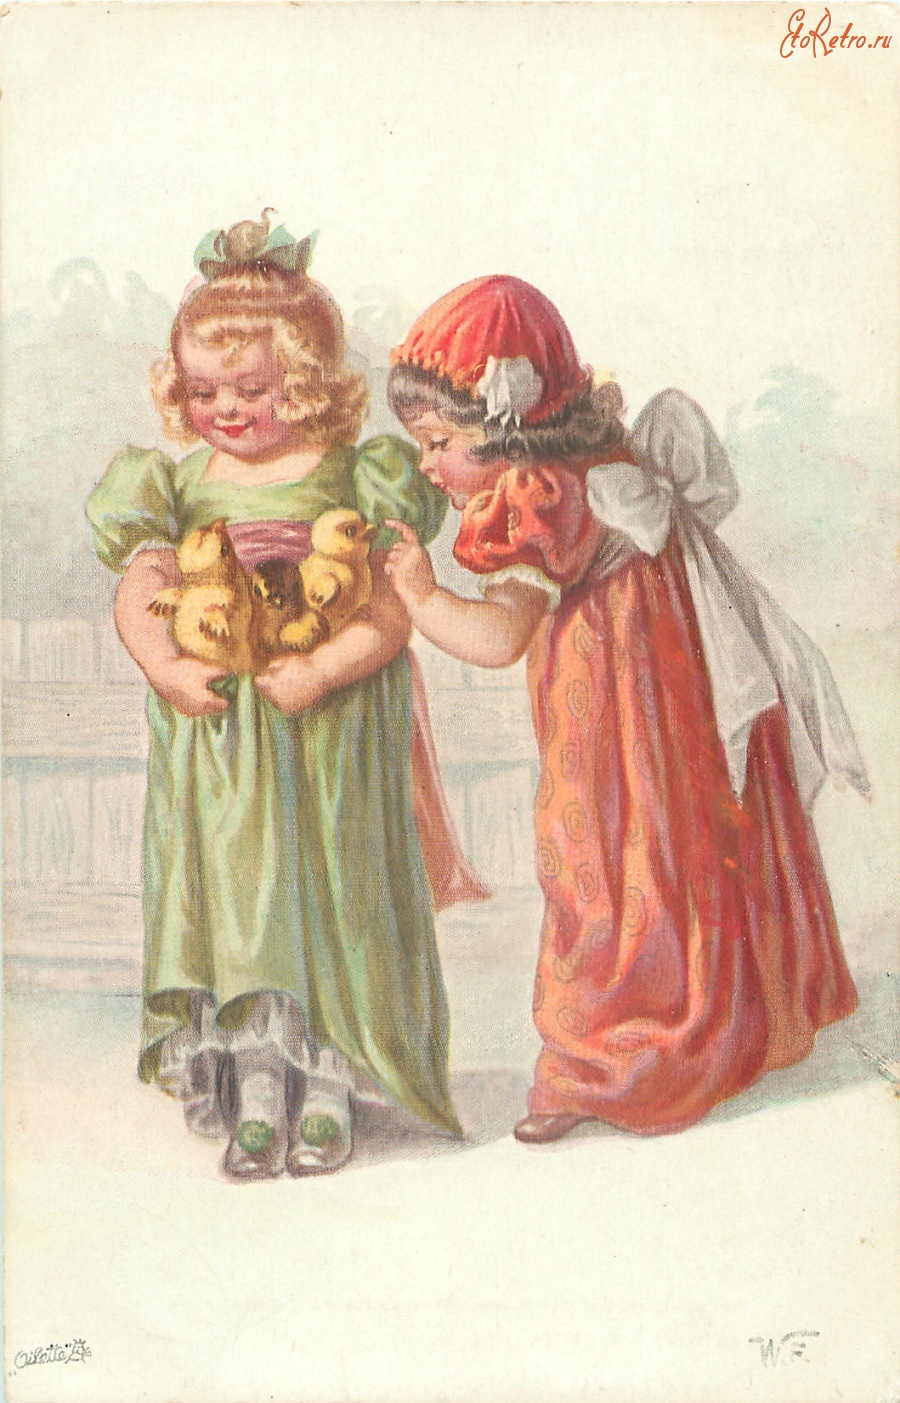 Ретро открытки - Две девочки в ярких платьях и цыплята